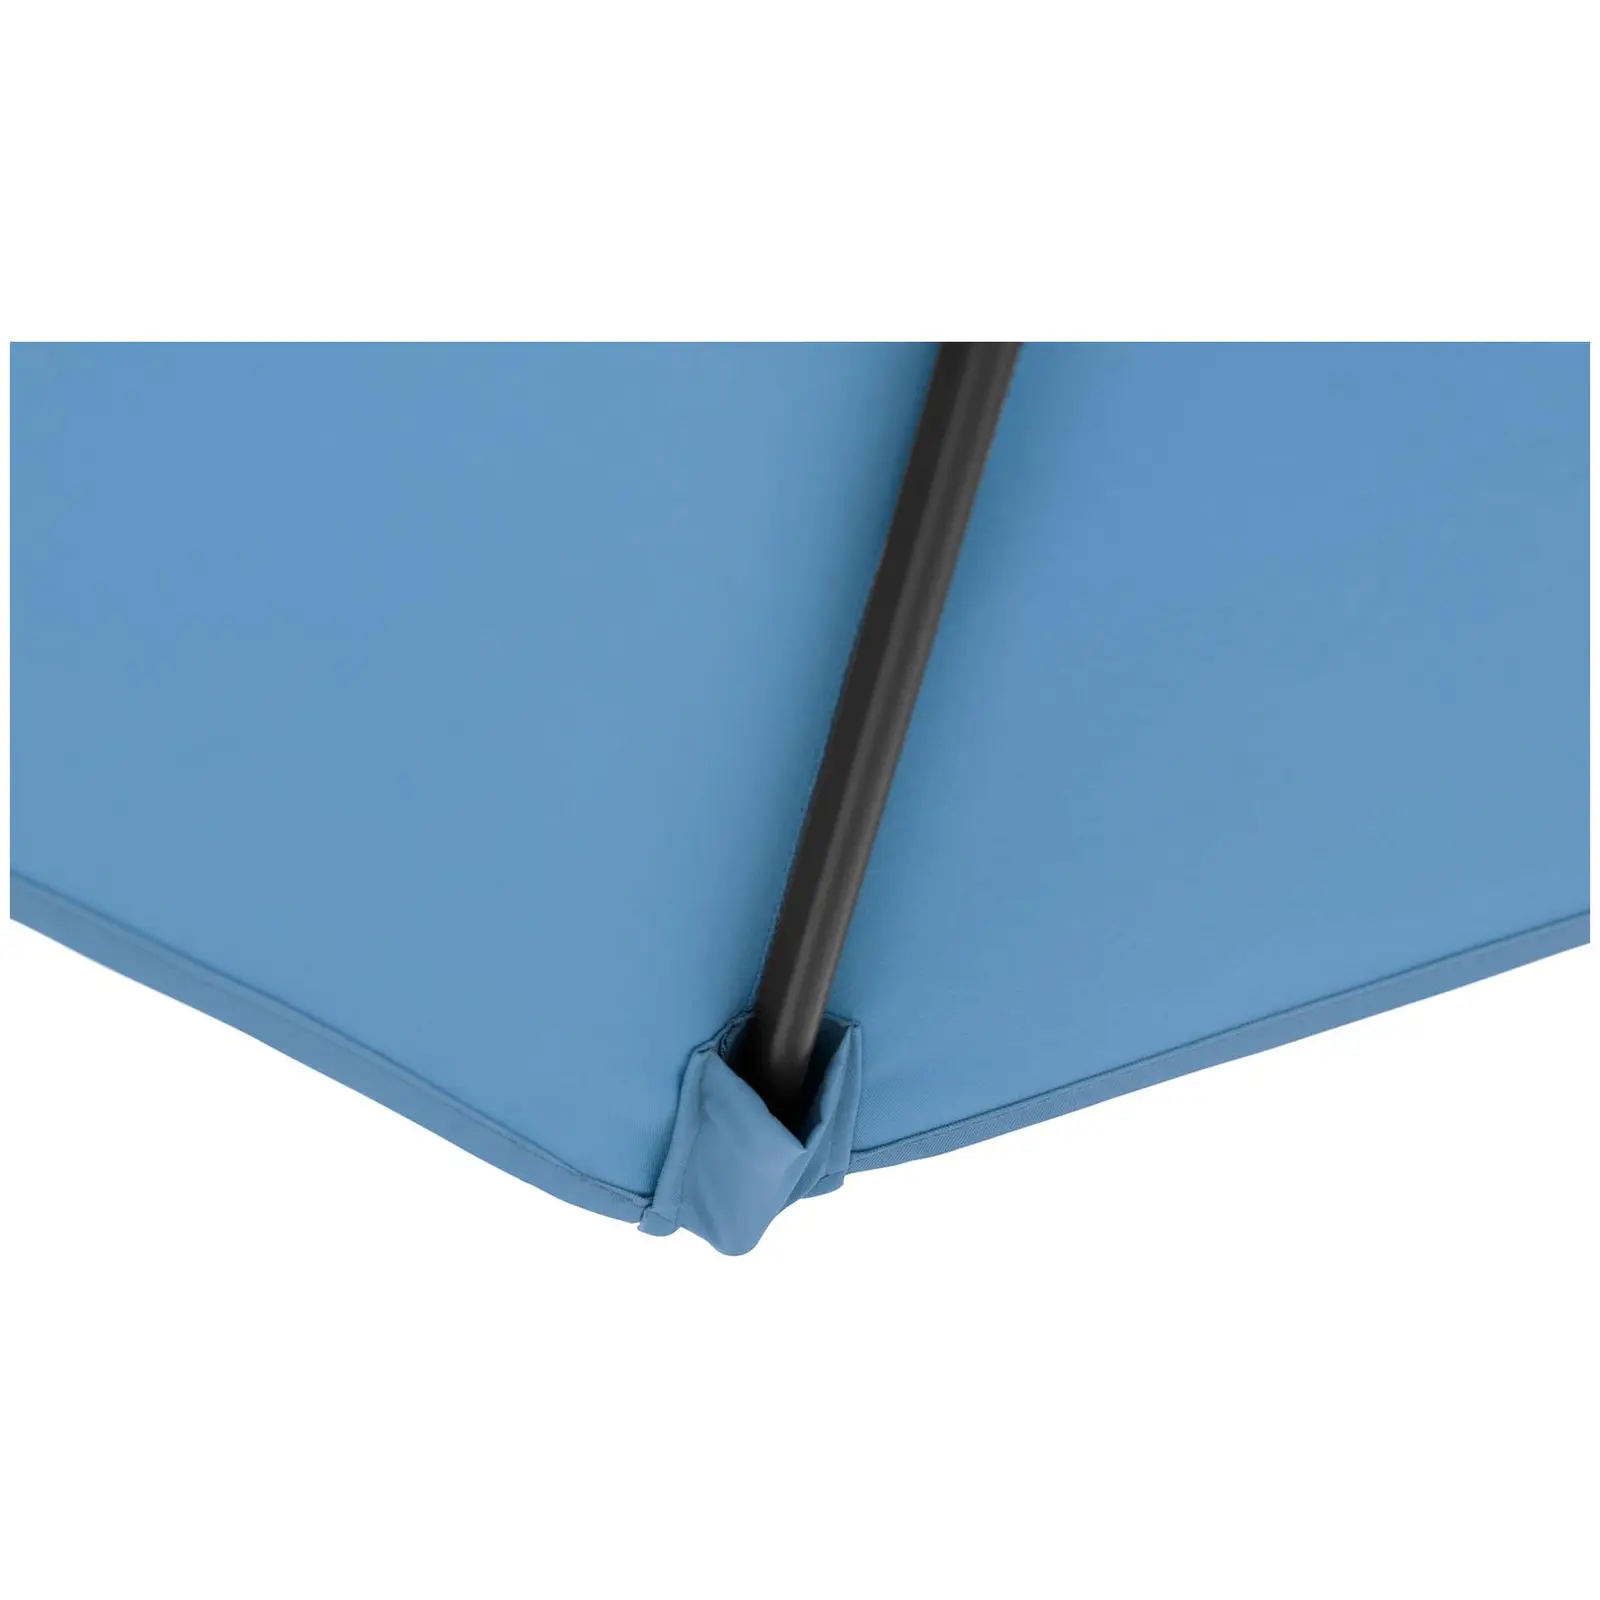 B-varer Hengeparasoll - blå - rektangulær - 250 x 250 cm - kan skråstilles